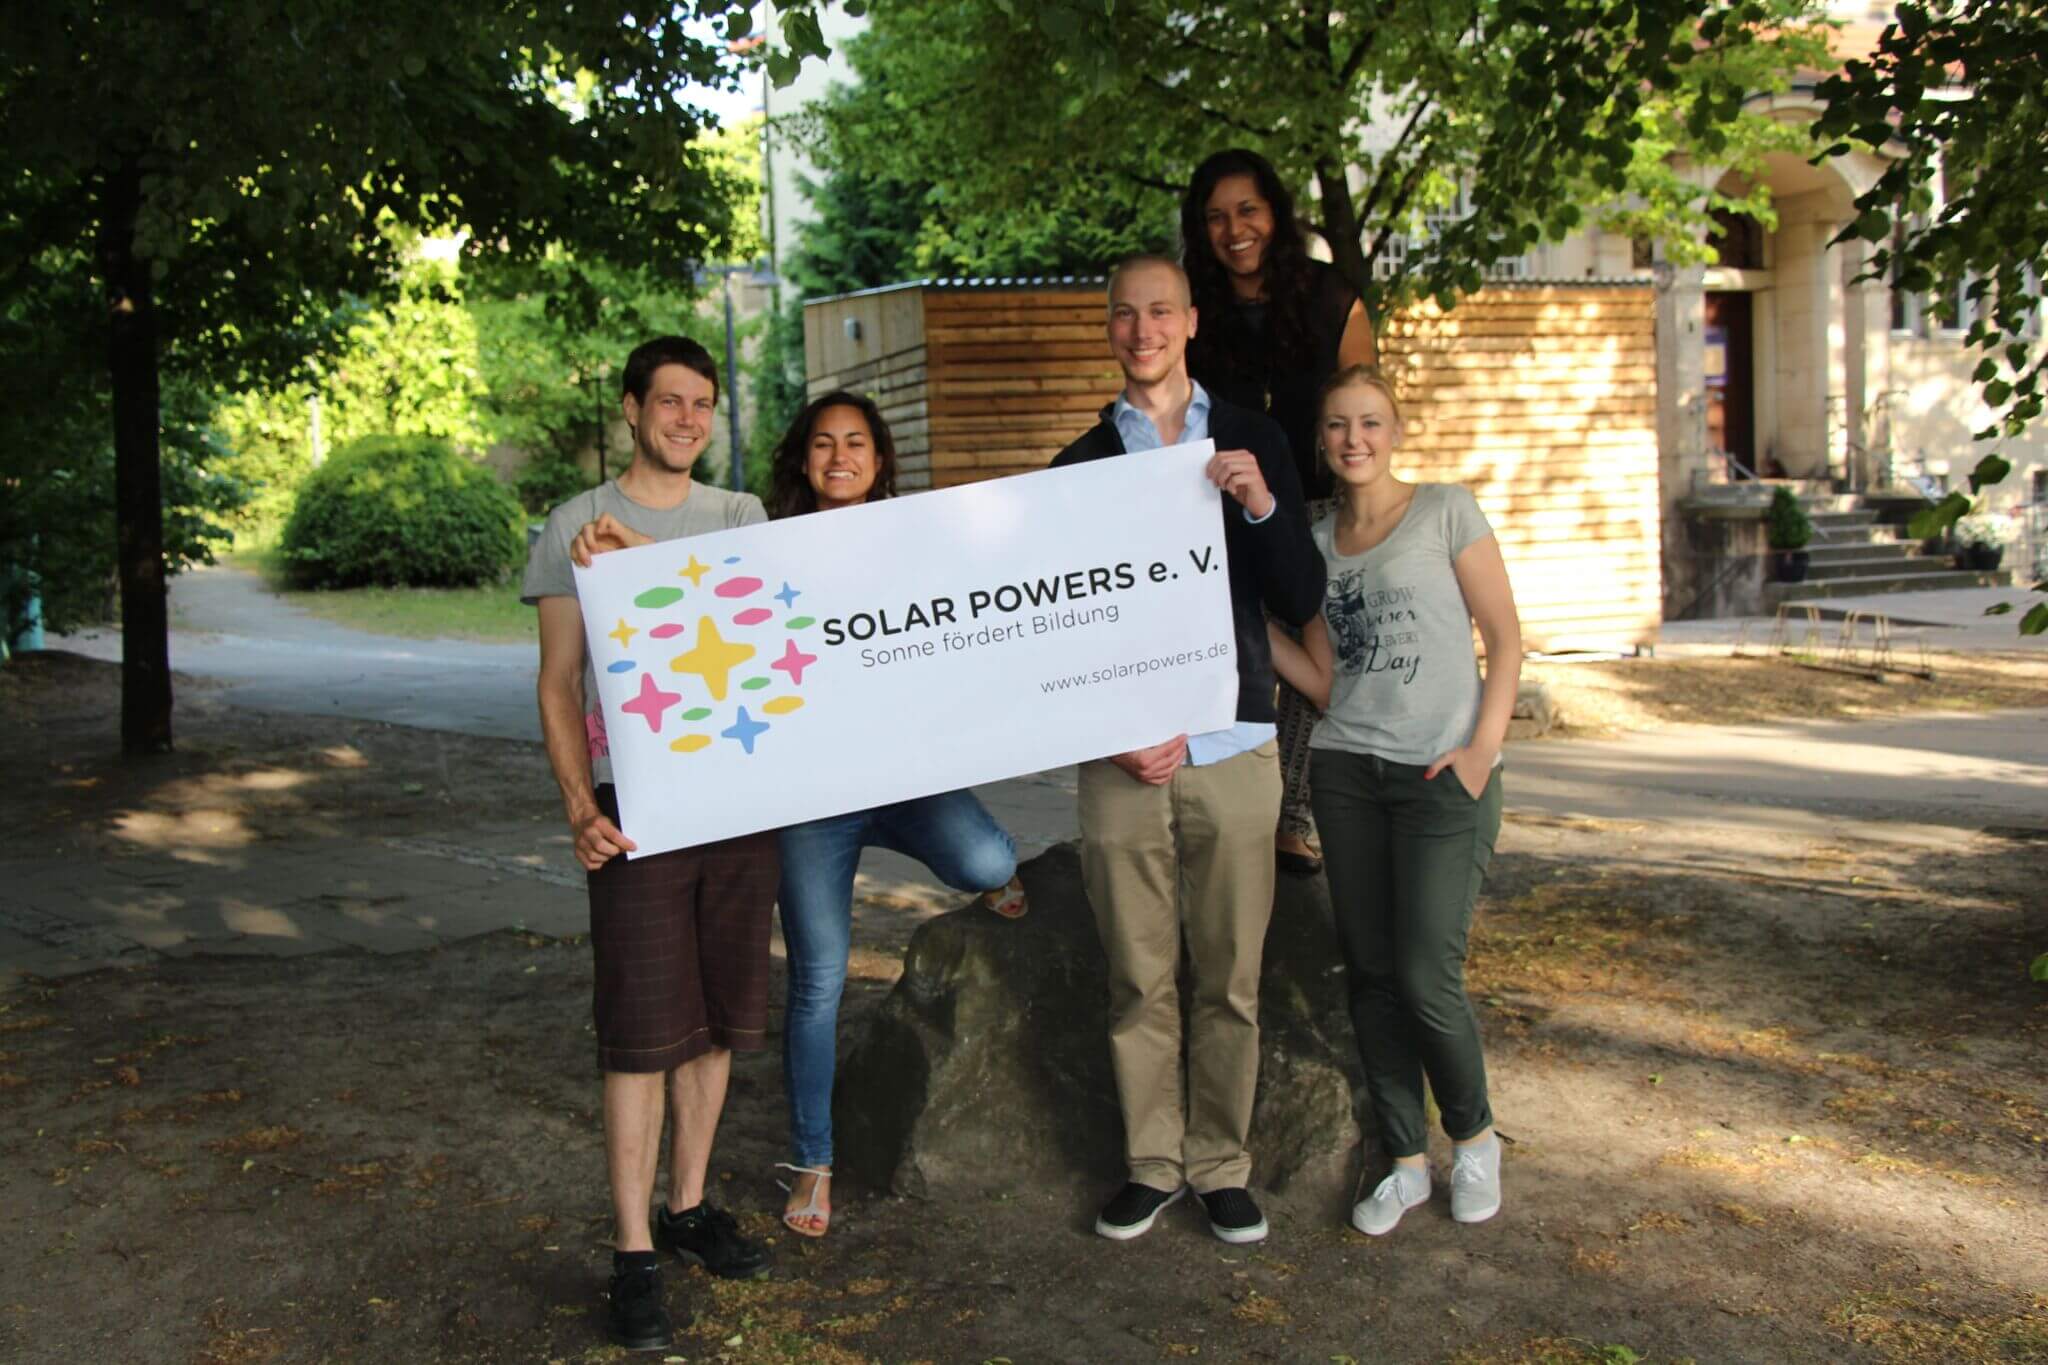 Der studentische Verein Solar Powers will auf den Dächern der TU Berlin Photovoltaikanlagen installieren © Soalr Powers e.V.